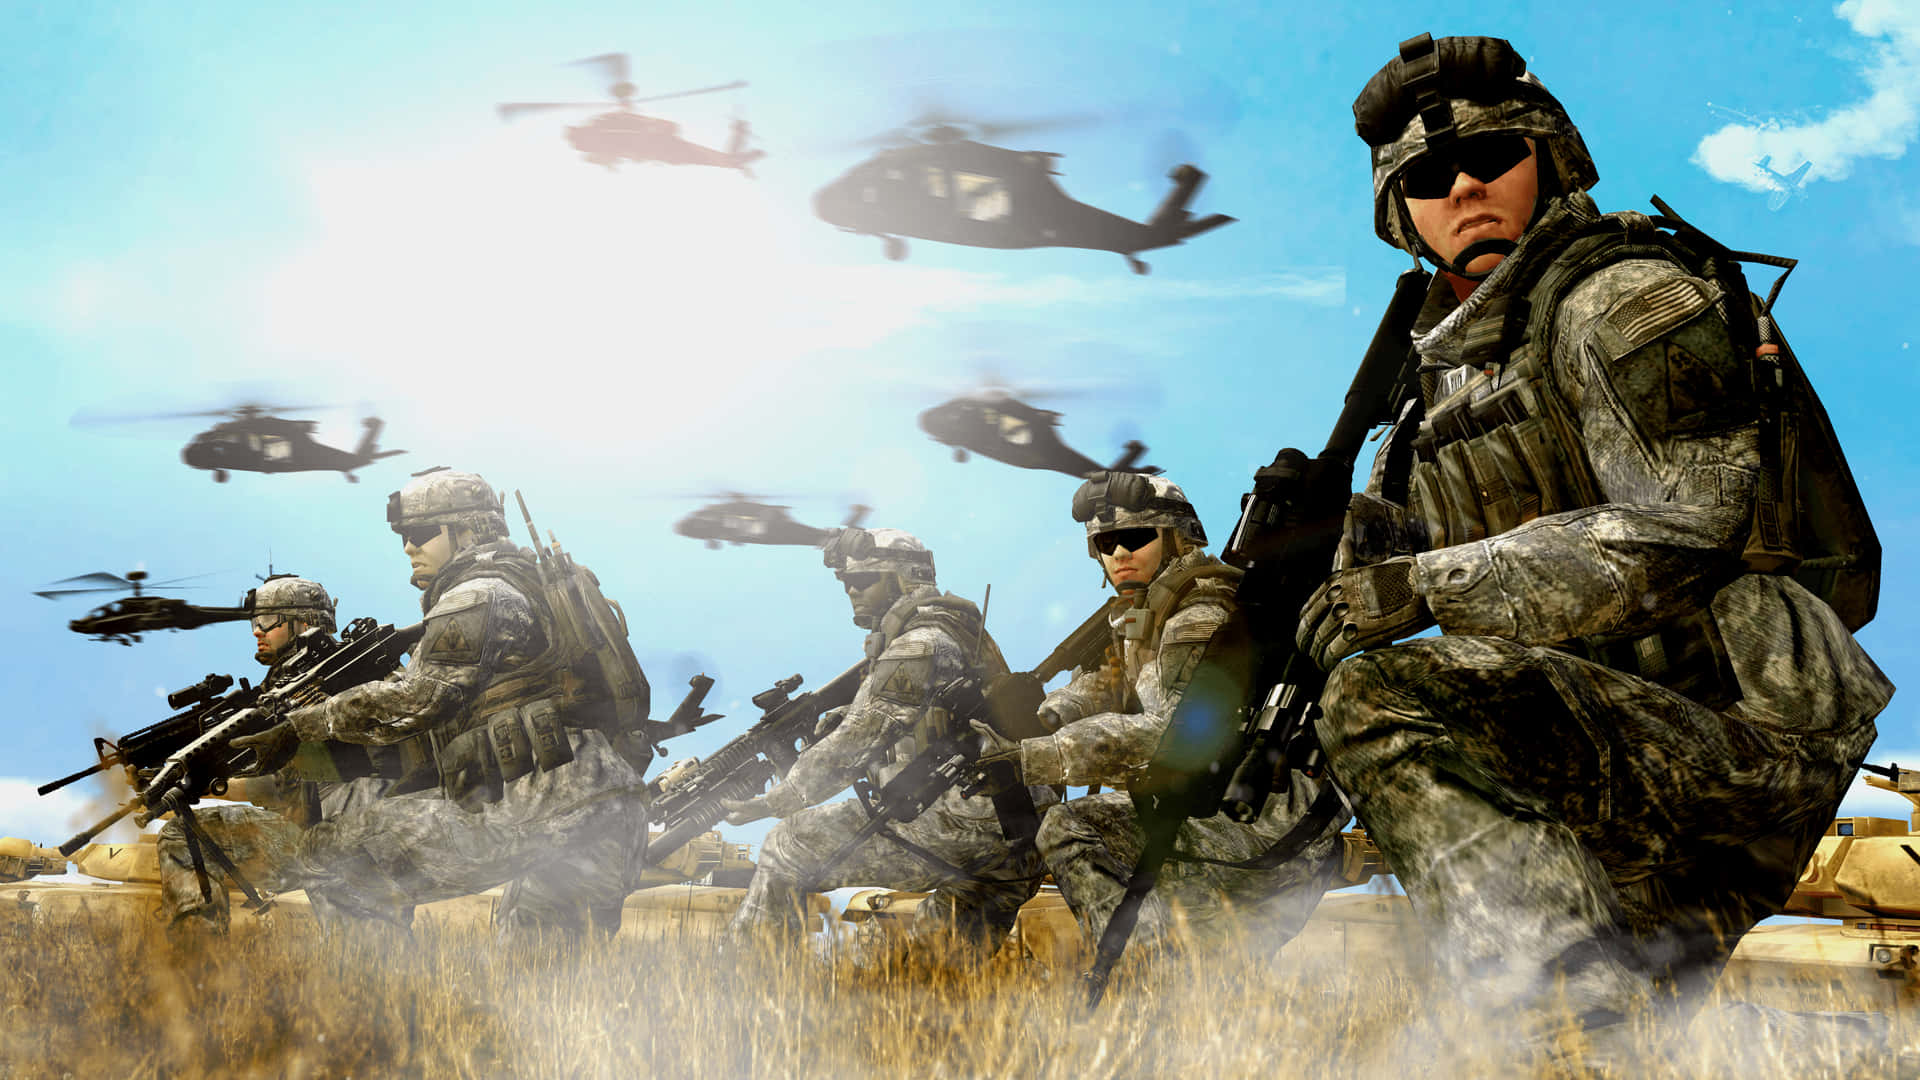 En amerikansk soldat står vagt under en militær operation. Wallpaper